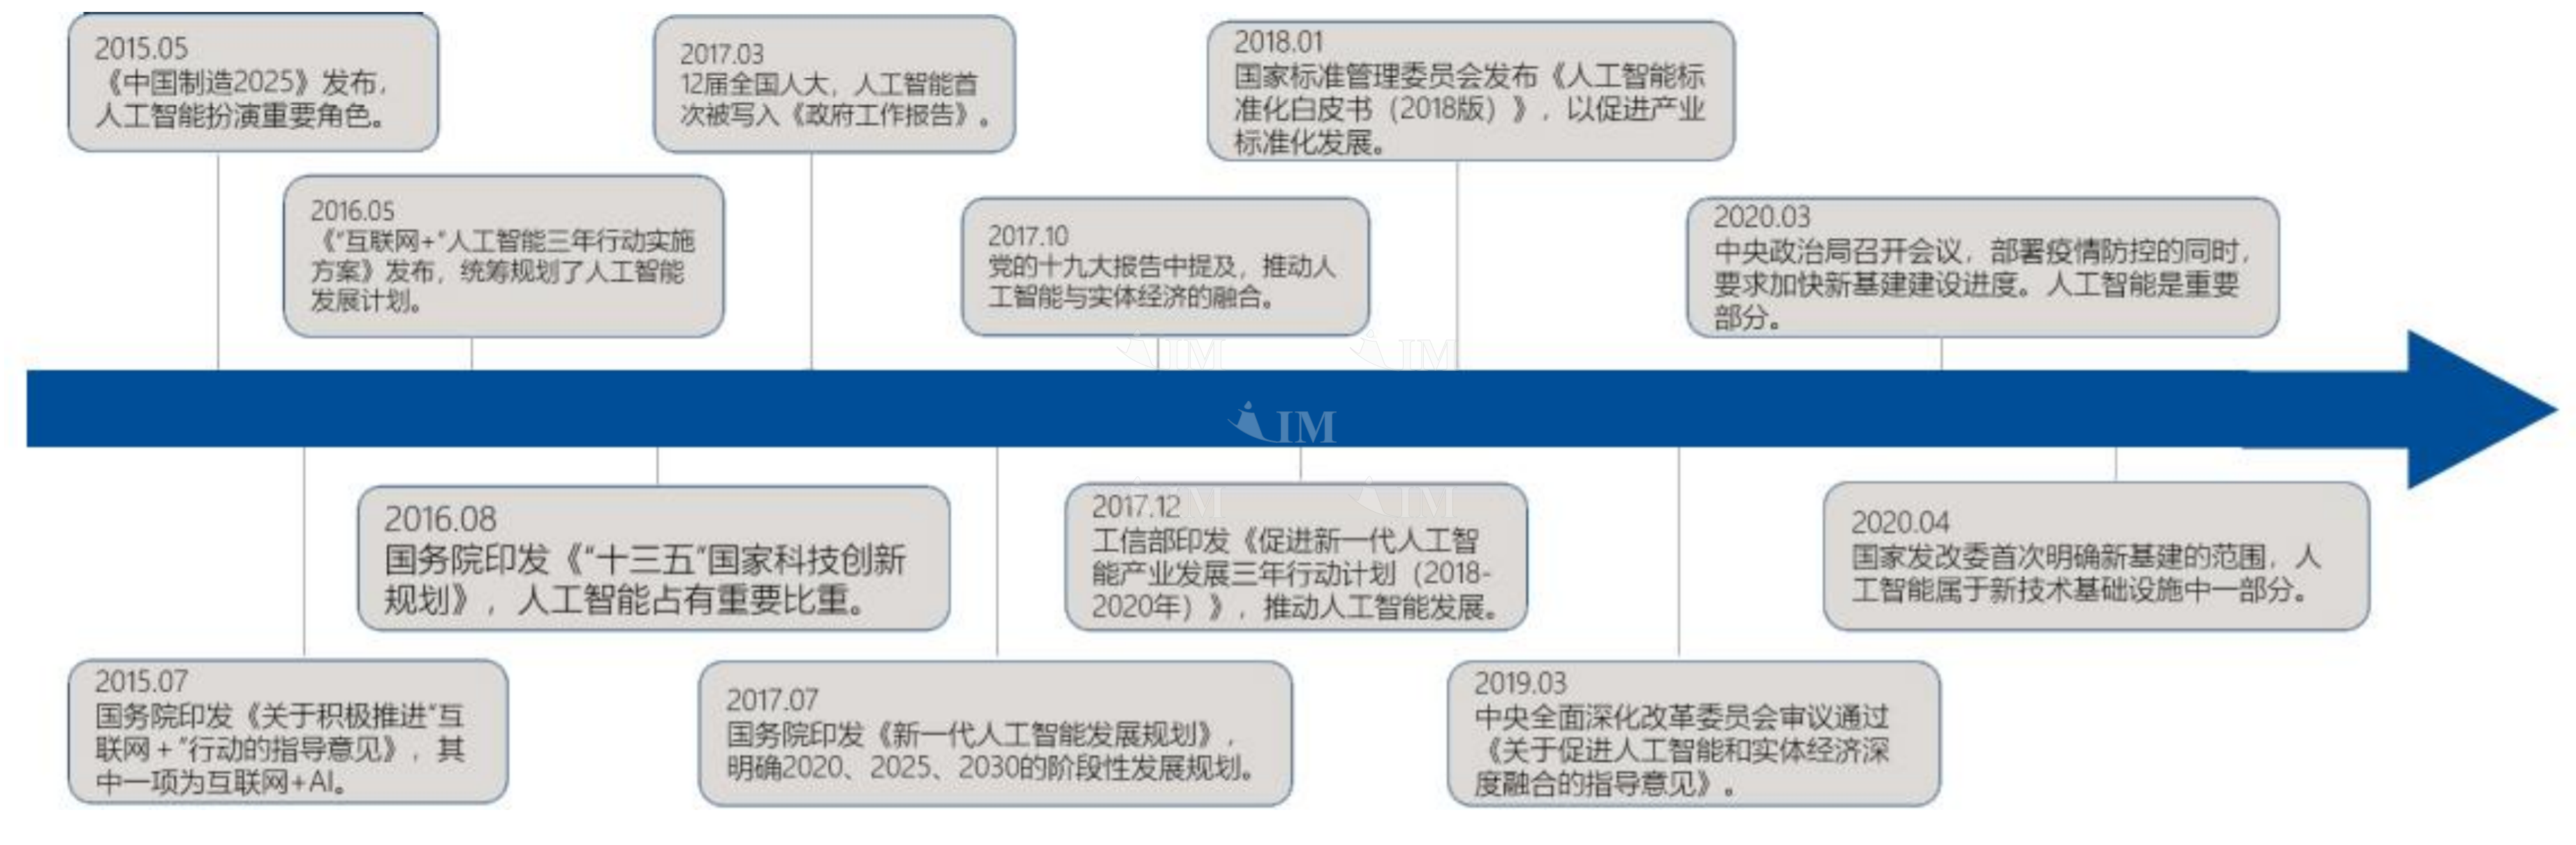 中国人工智能行业发展政策历程